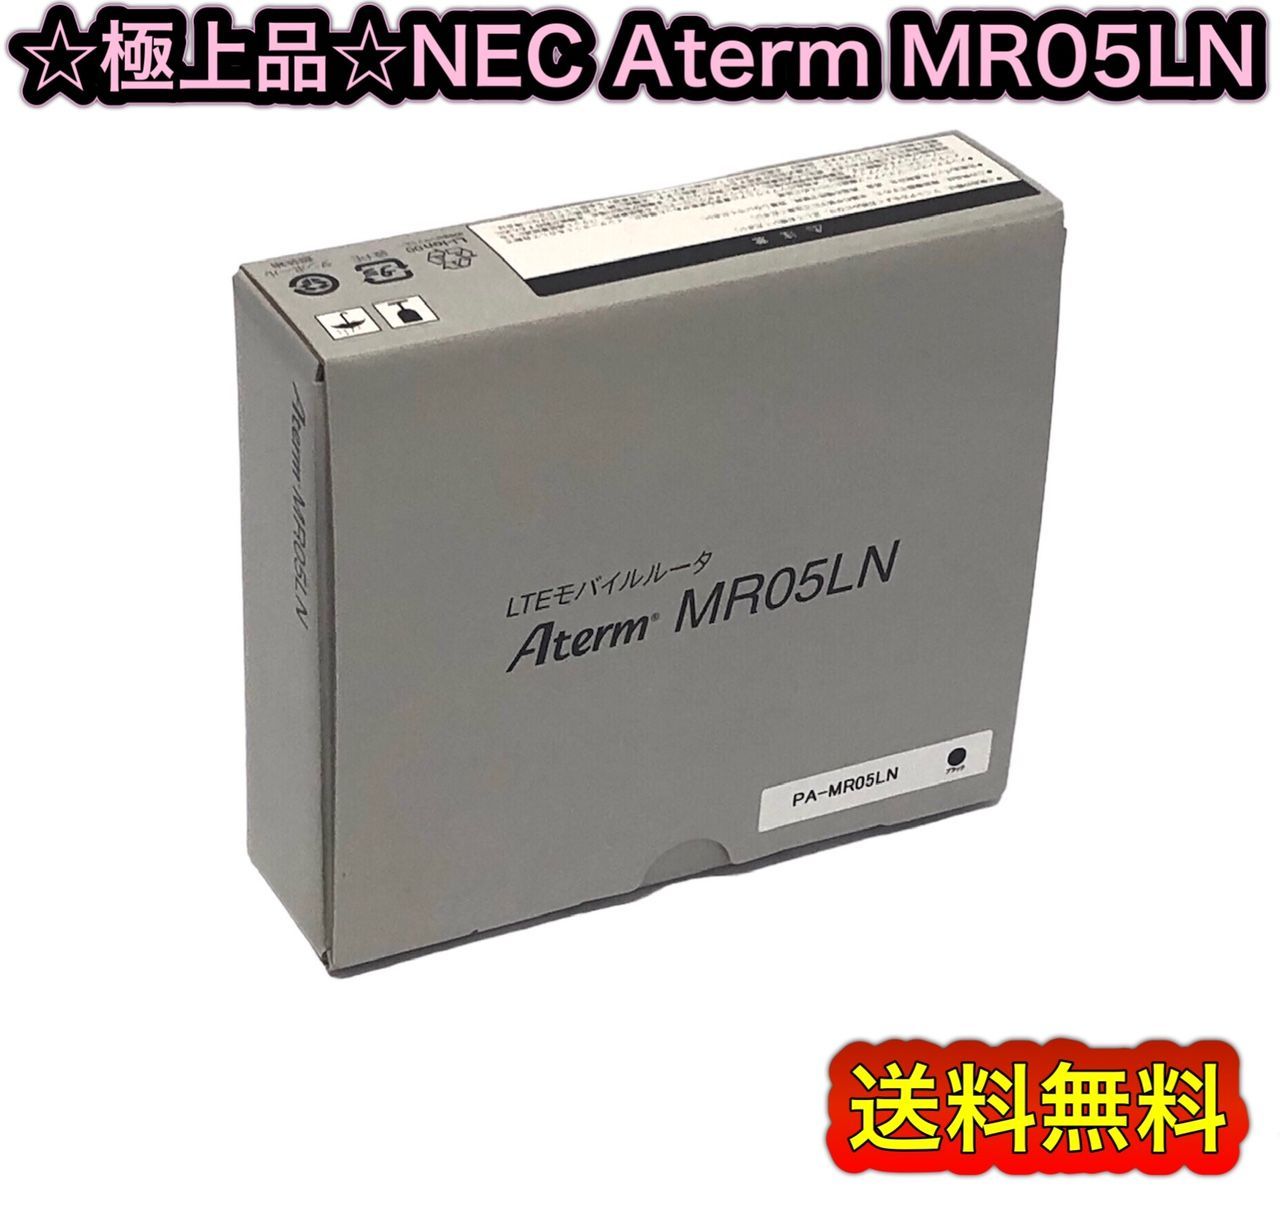 極上品※未使用? NEC Aterm MR05LN 箱説明書付属品有 - メルカリ